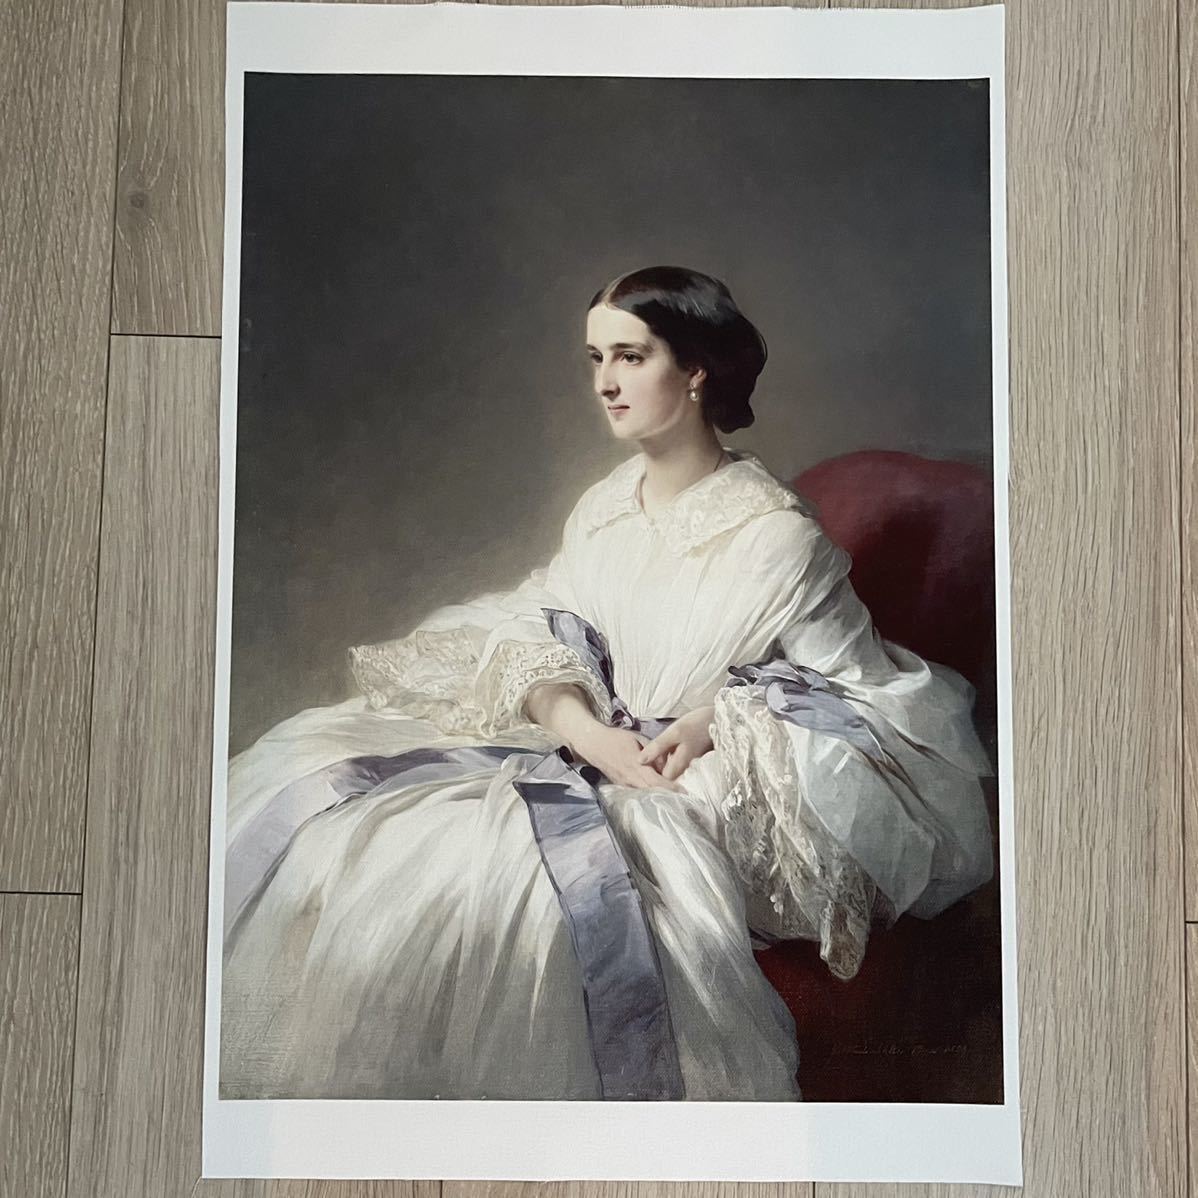 [Livraison gratuite] Winterhalter comtesse Olga impression sur toile 307x413 Franz Winterhalter peinture occidentale peinture russe Portrait, ouvrages d'art, peinture, autres